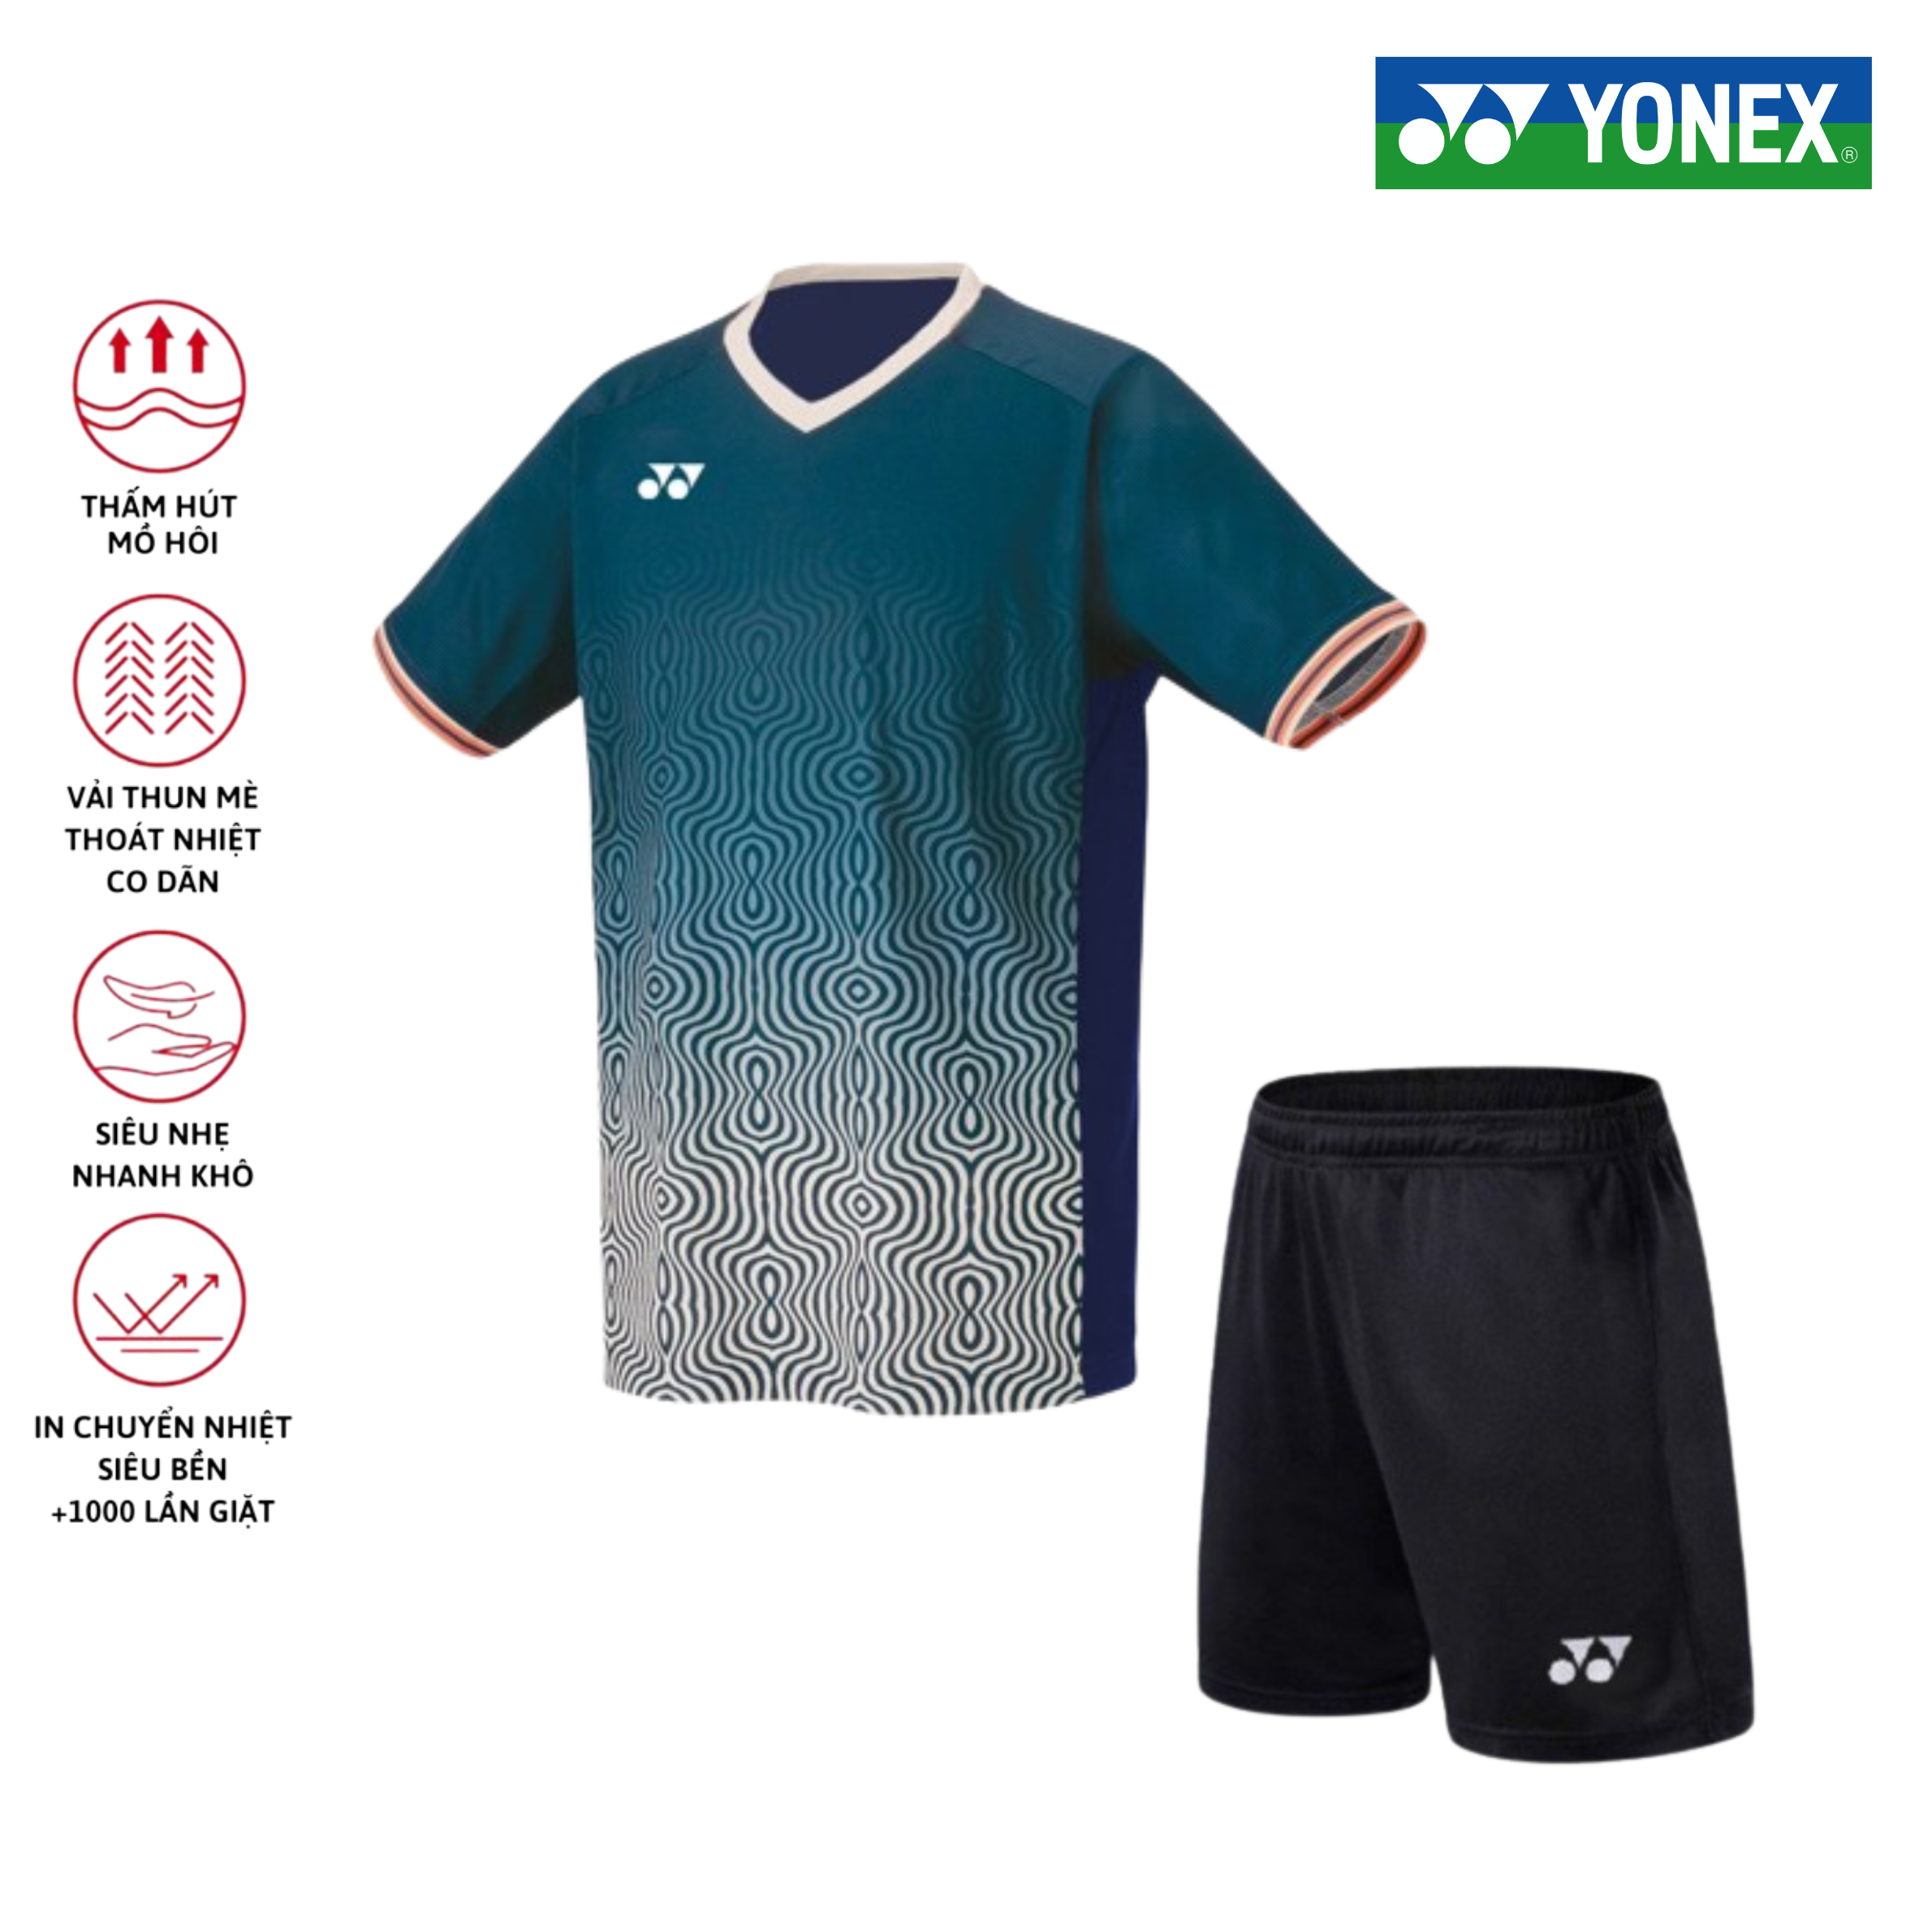 Áo cầu lông, quần cầu lông Yonex chuyên nghiệp mới nhất sử dụng tập luyện và thi đấu cầu lông A496